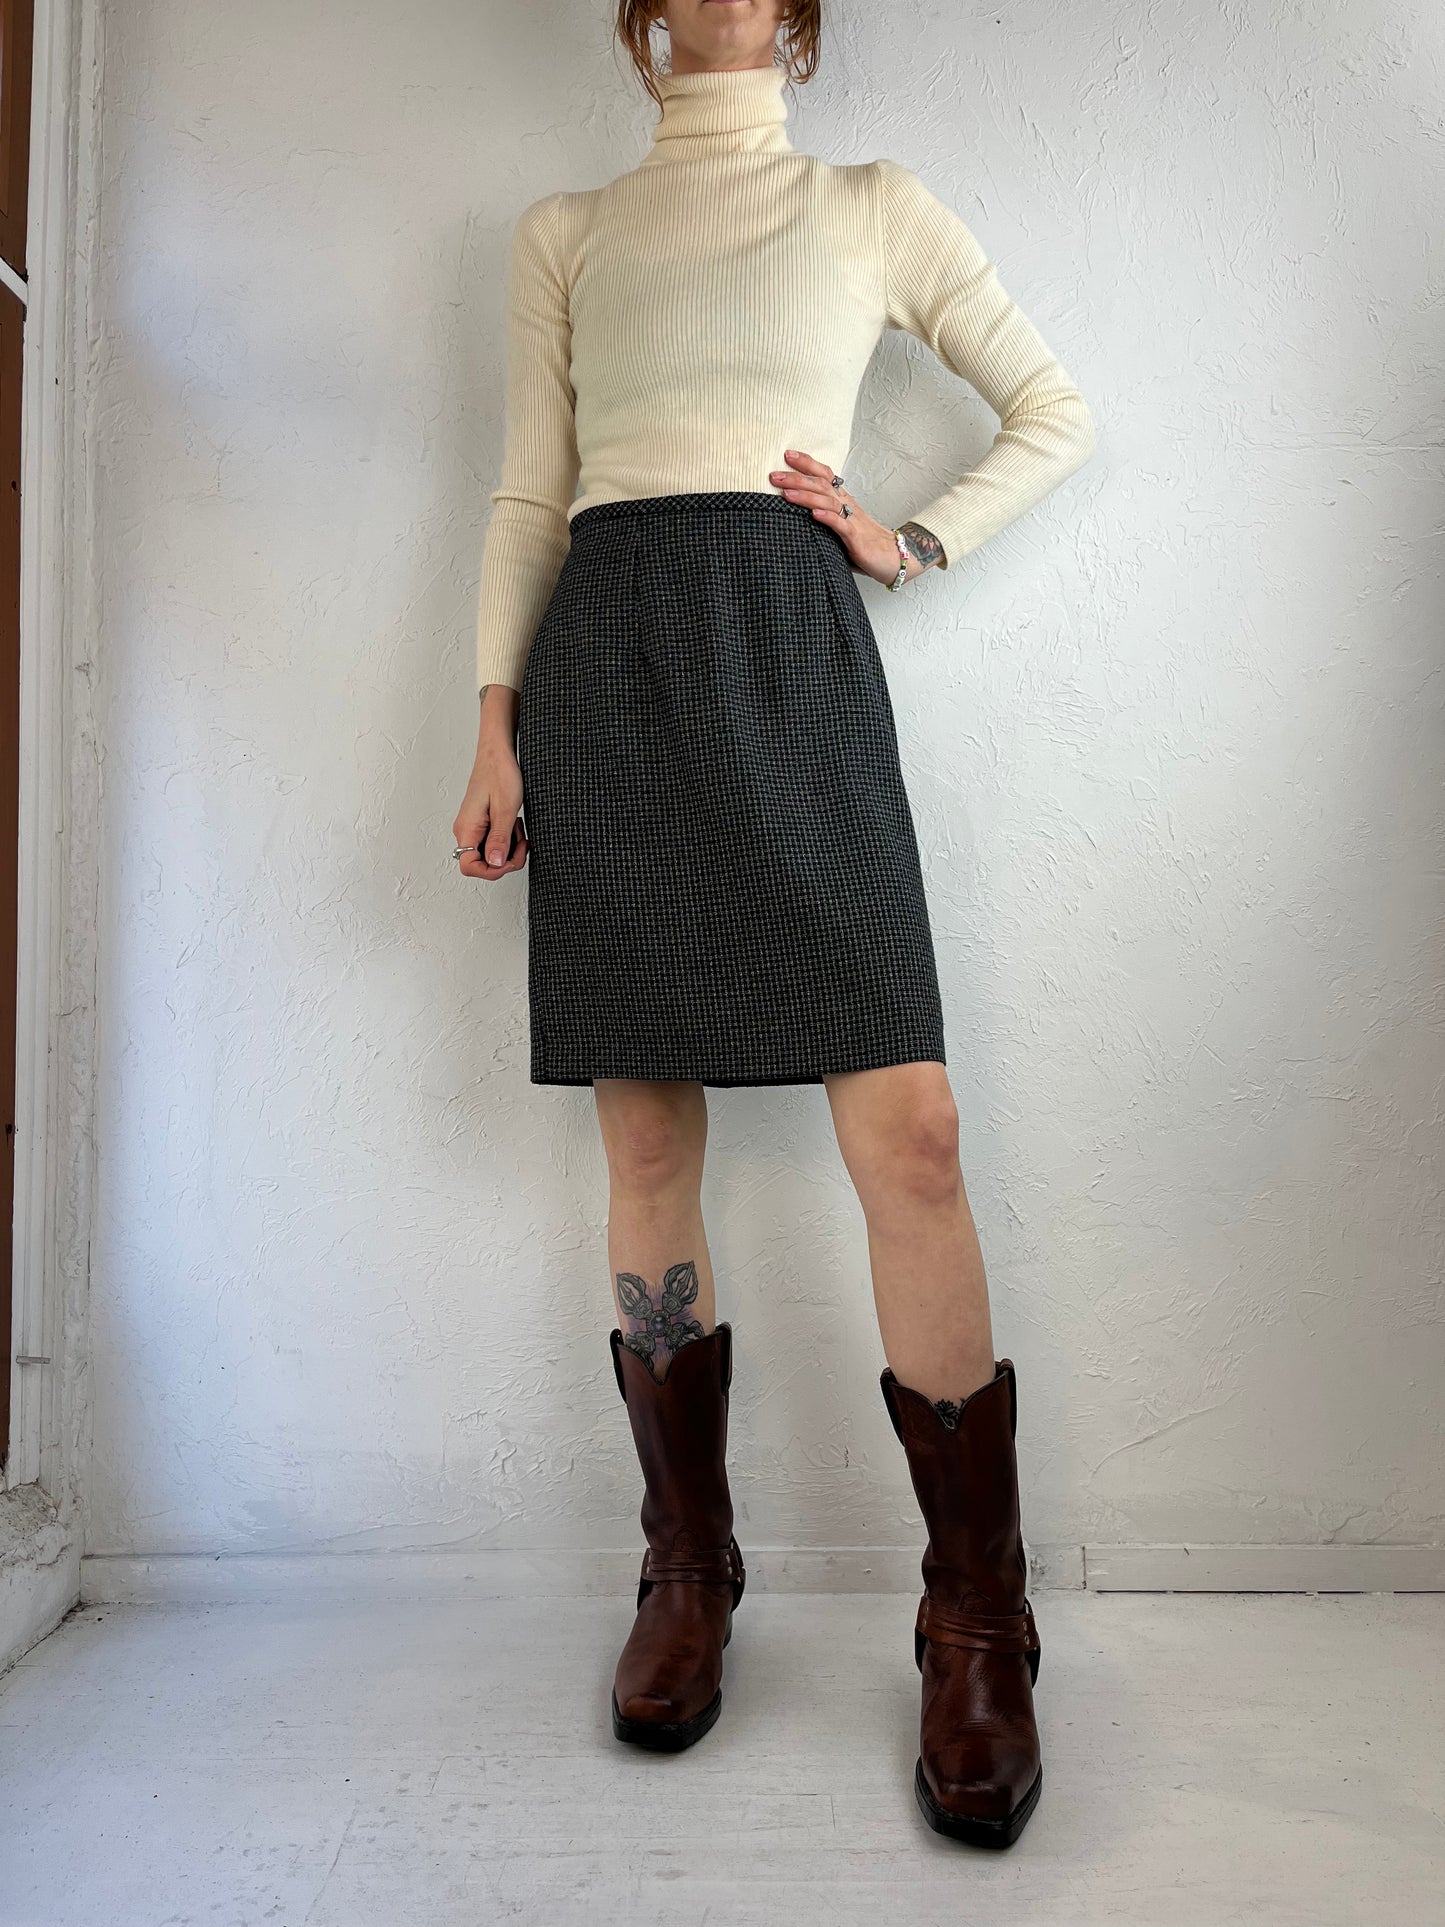 90s 'Beechers Brook' Pencil Skirt / 6